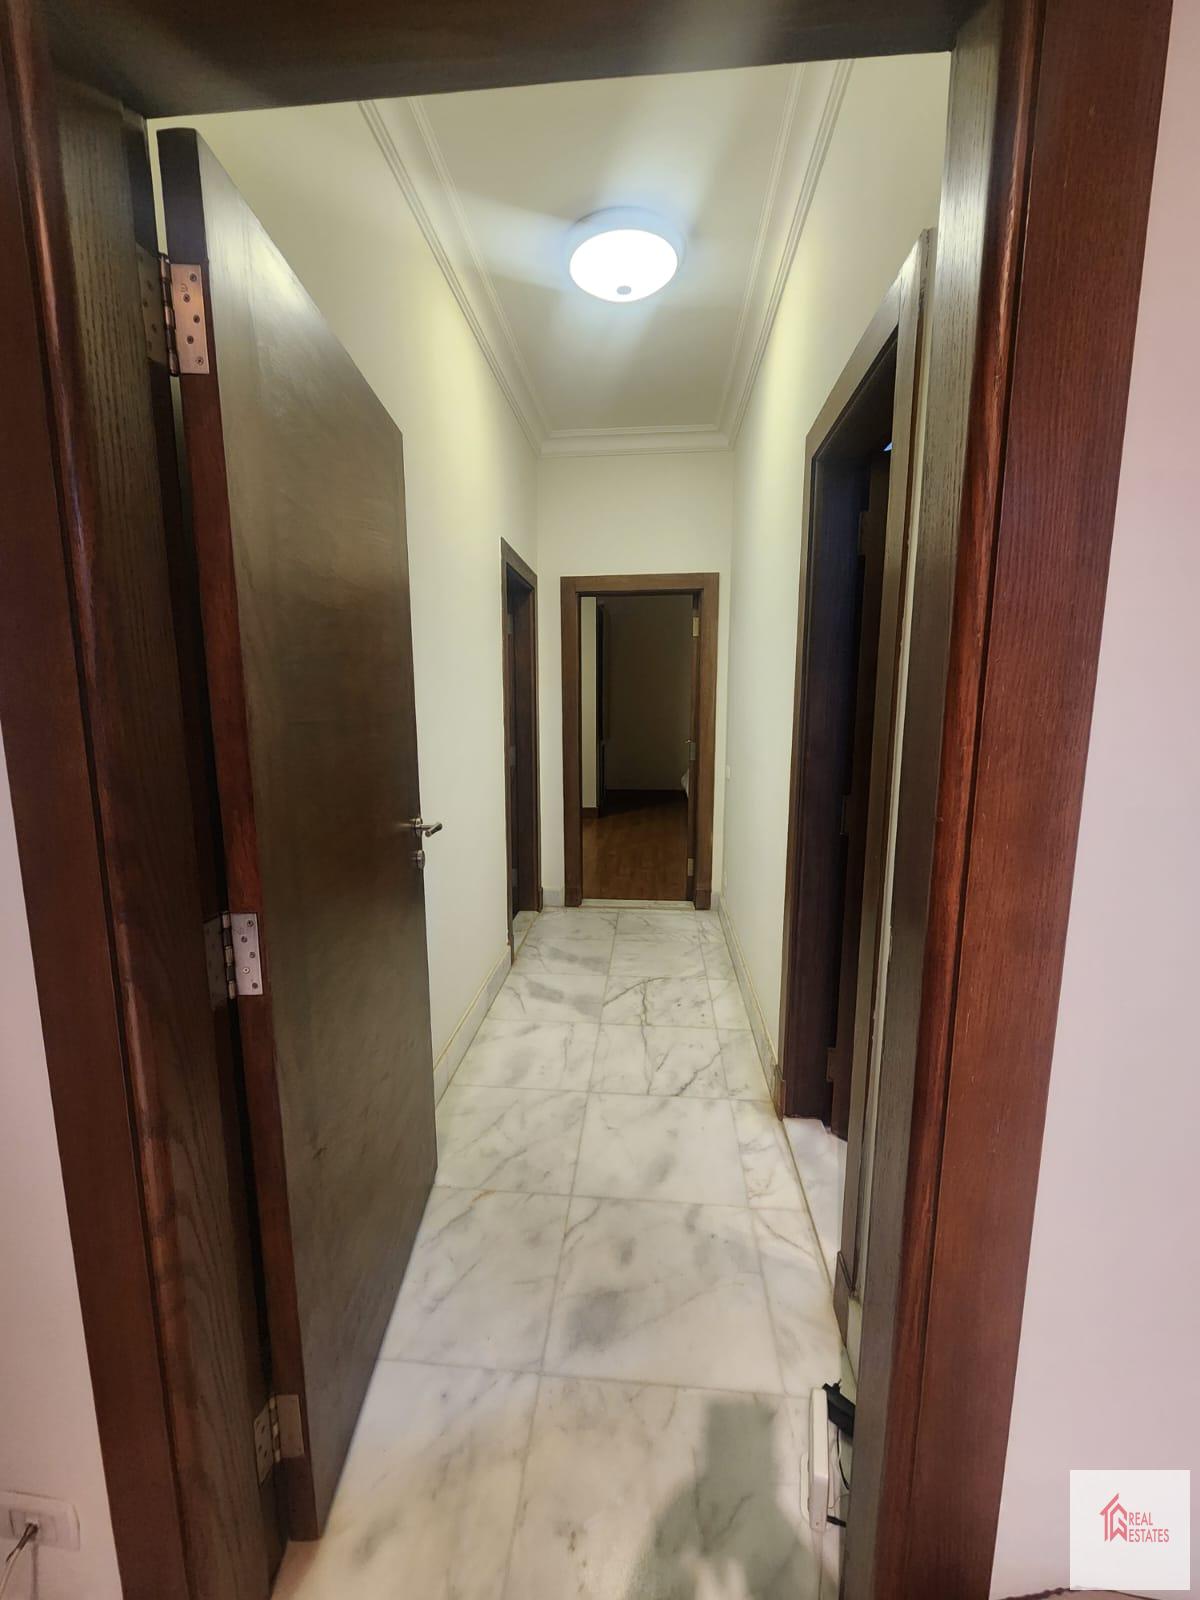 침실 2개, 욕실 2개 현대적인 가구가 구비된 아파트 임대 Madi Sarayate